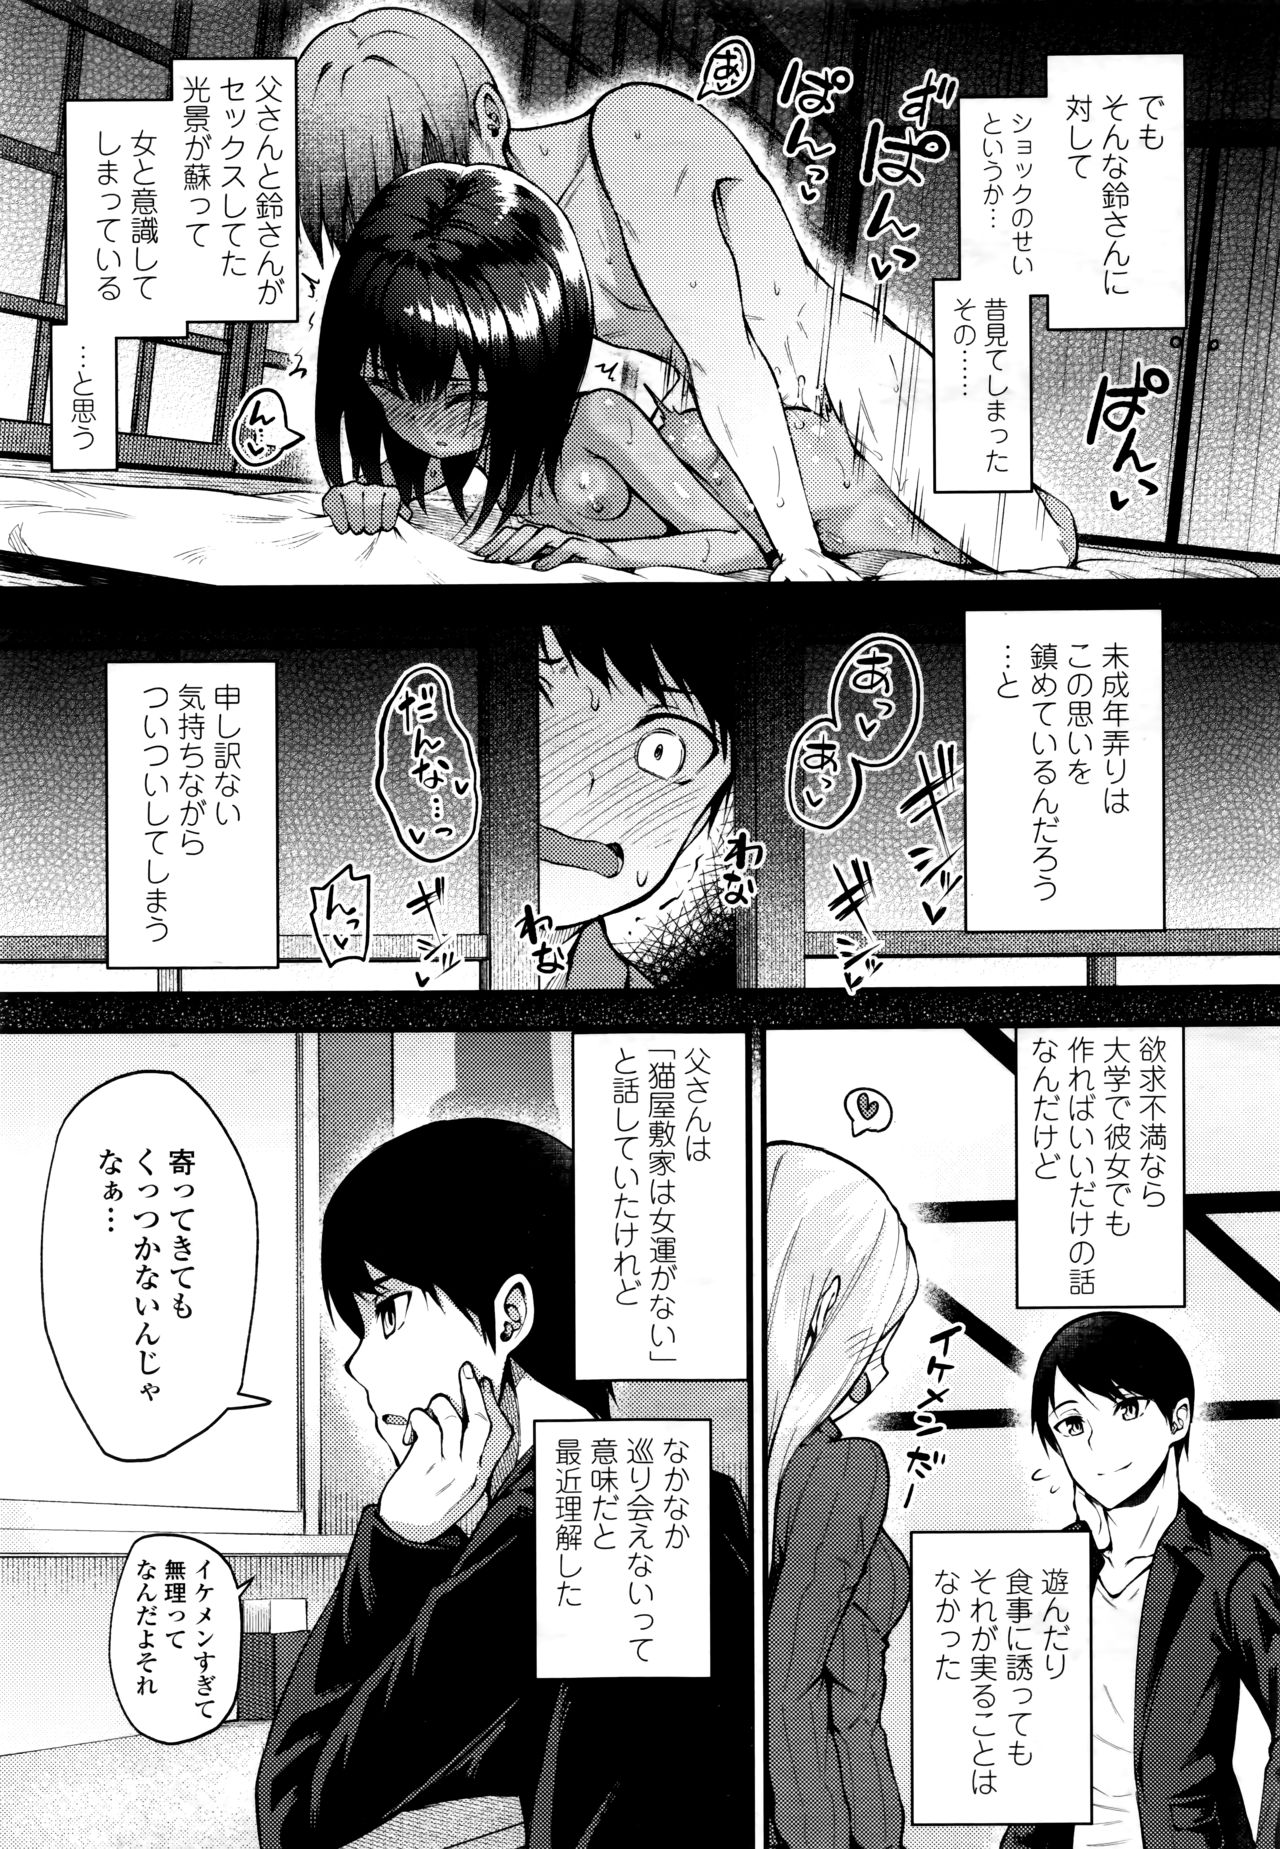 Towako 6 page 49 full